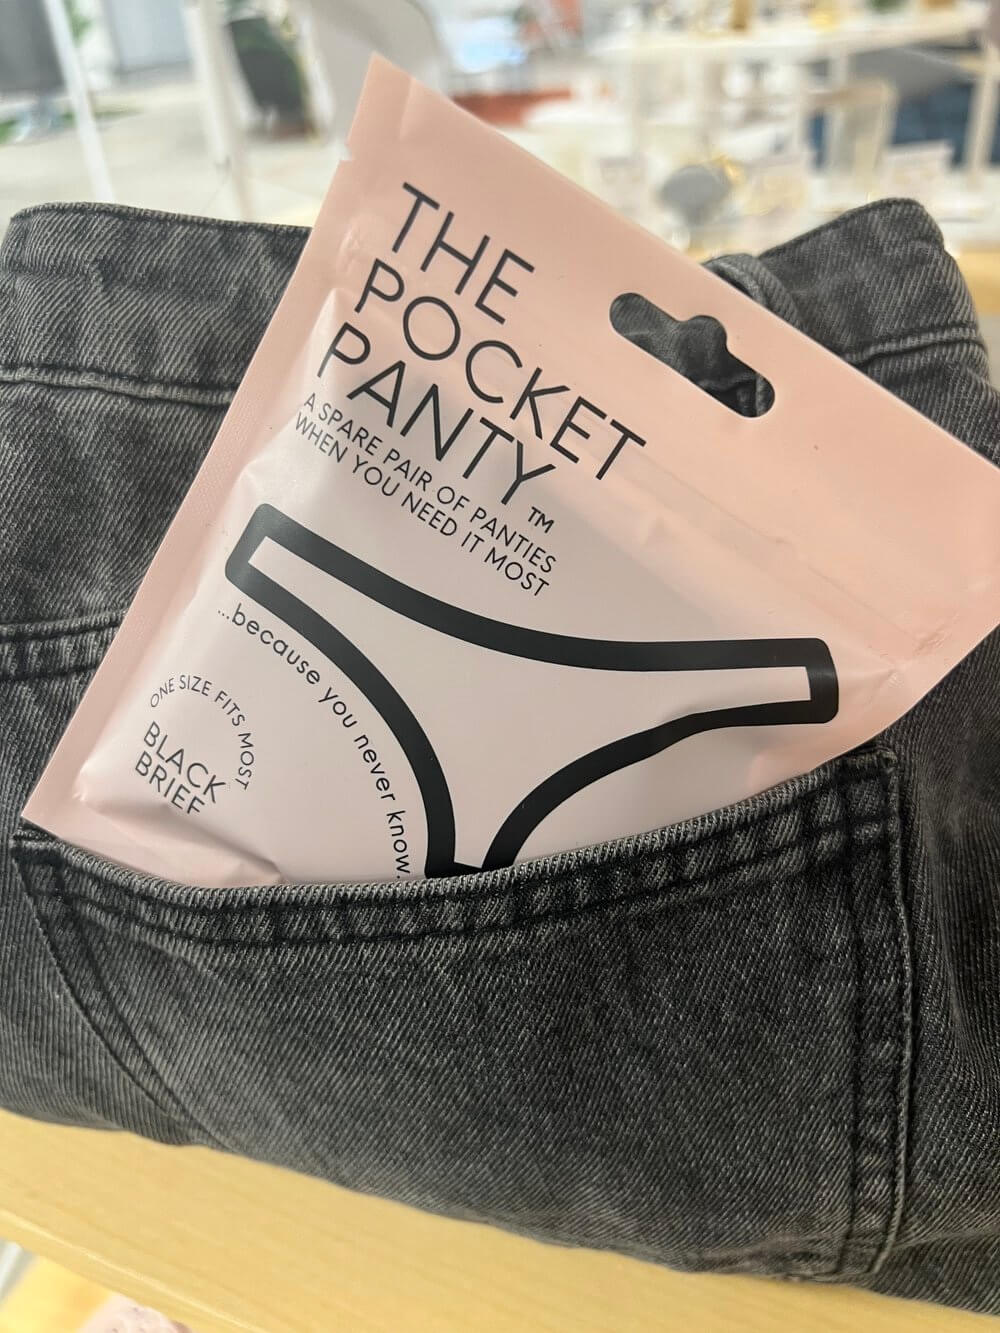 The Pocket Panty from Shark Tank Season 15